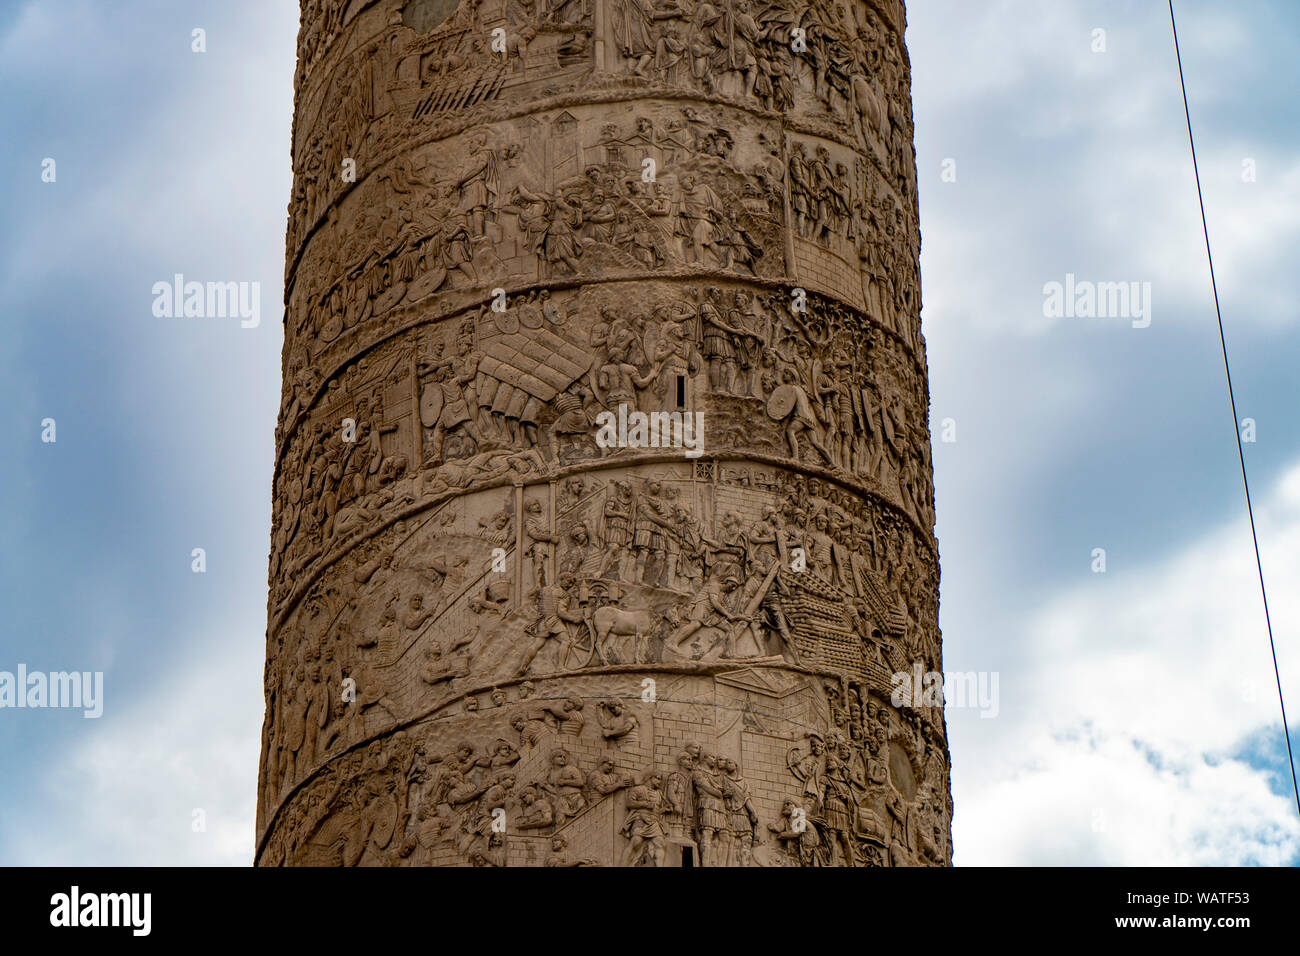 Colonna Traiana, dettaglio del bassorilievo scene della Traja 's colonna in Roma Foto Stock